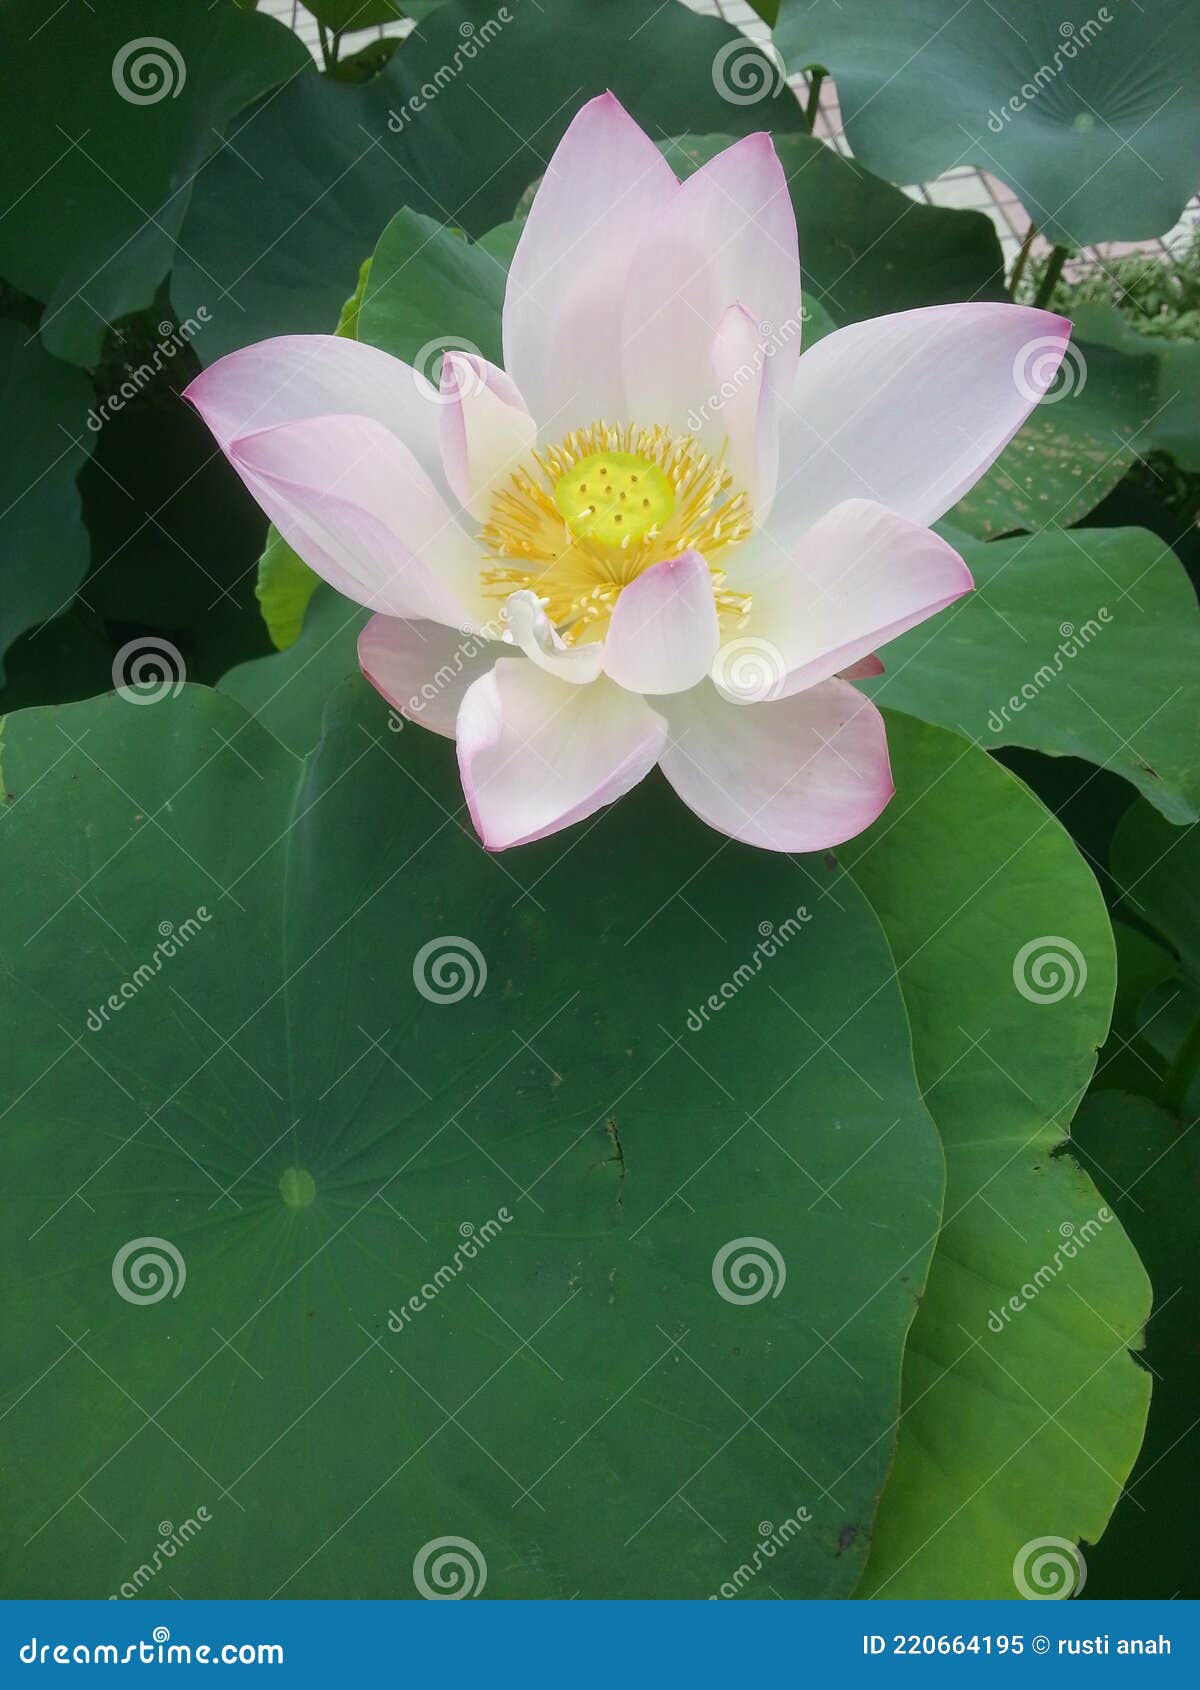 Une Fleur De Lotus Rose Avec Un Pistil Jaune Au Milieu En Fleur Sur Ses  Feuilles épaisses Et Vertes Image stock - Image du vert, profondément:  220664195